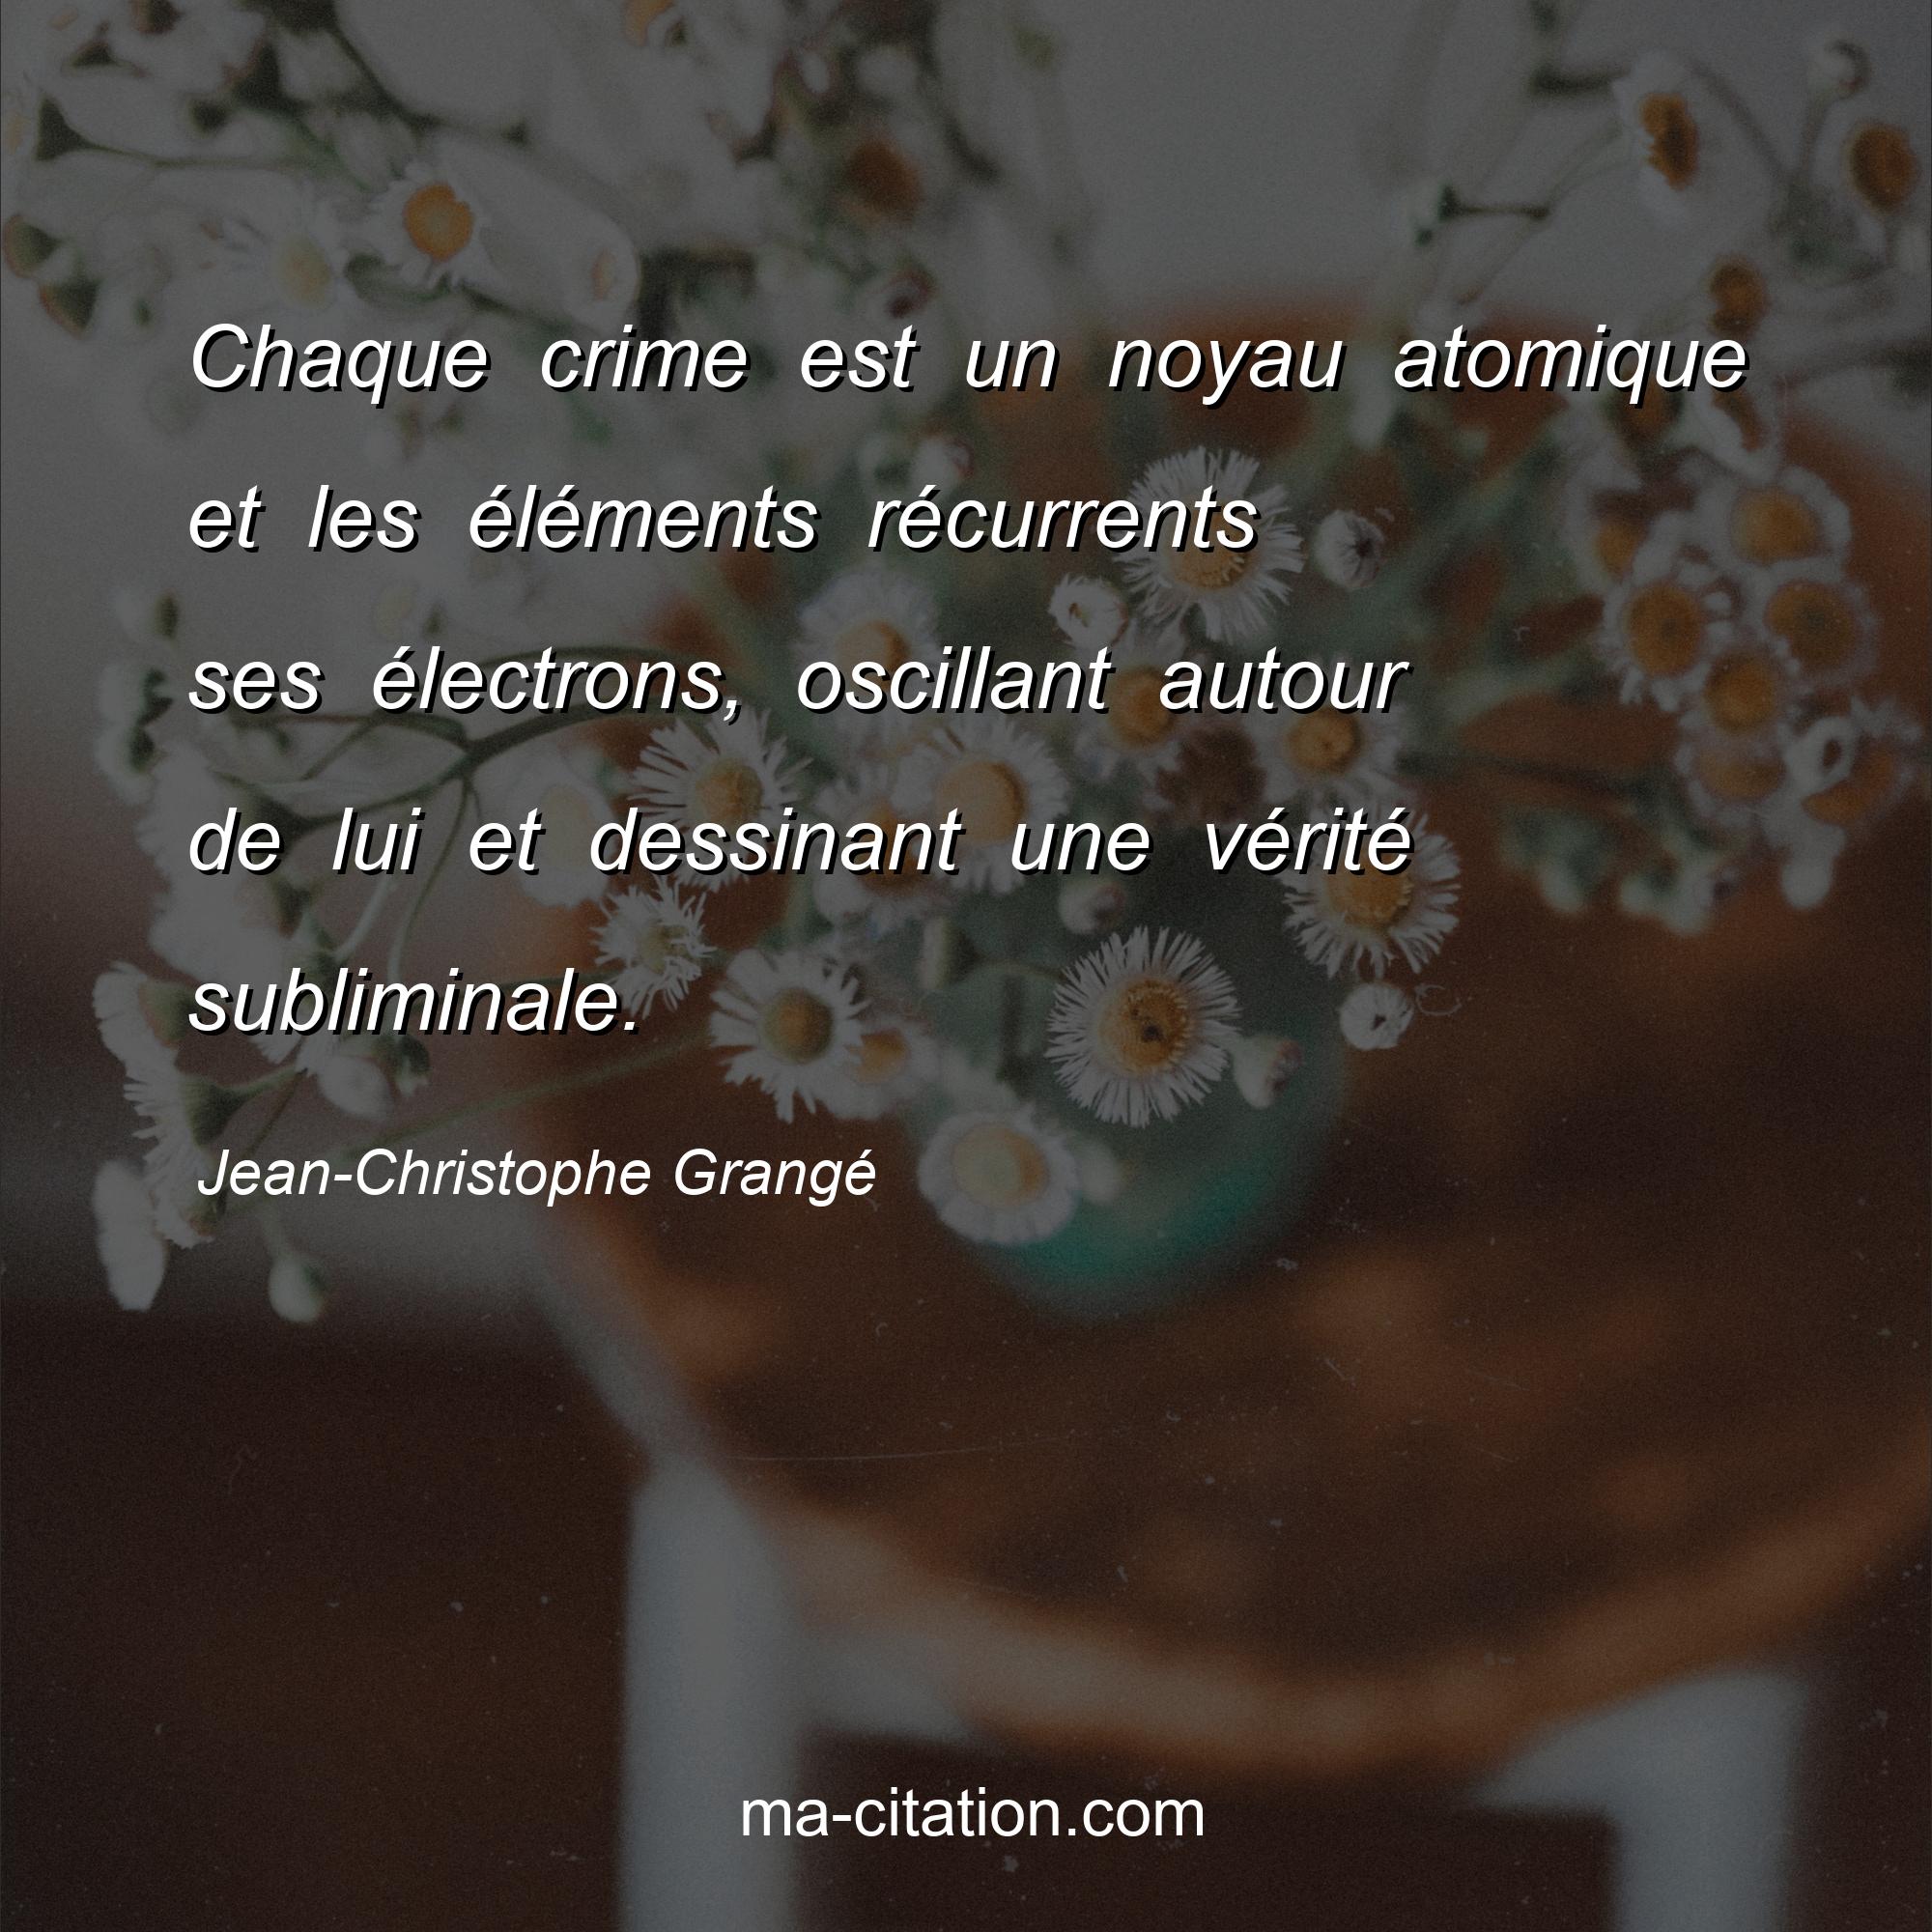 Jean-Christophe Grangé : Chaque crime est un noyau atomique et les éléments récurrents ses électrons, oscillant autour de lui et dessinant une vérité subliminale.